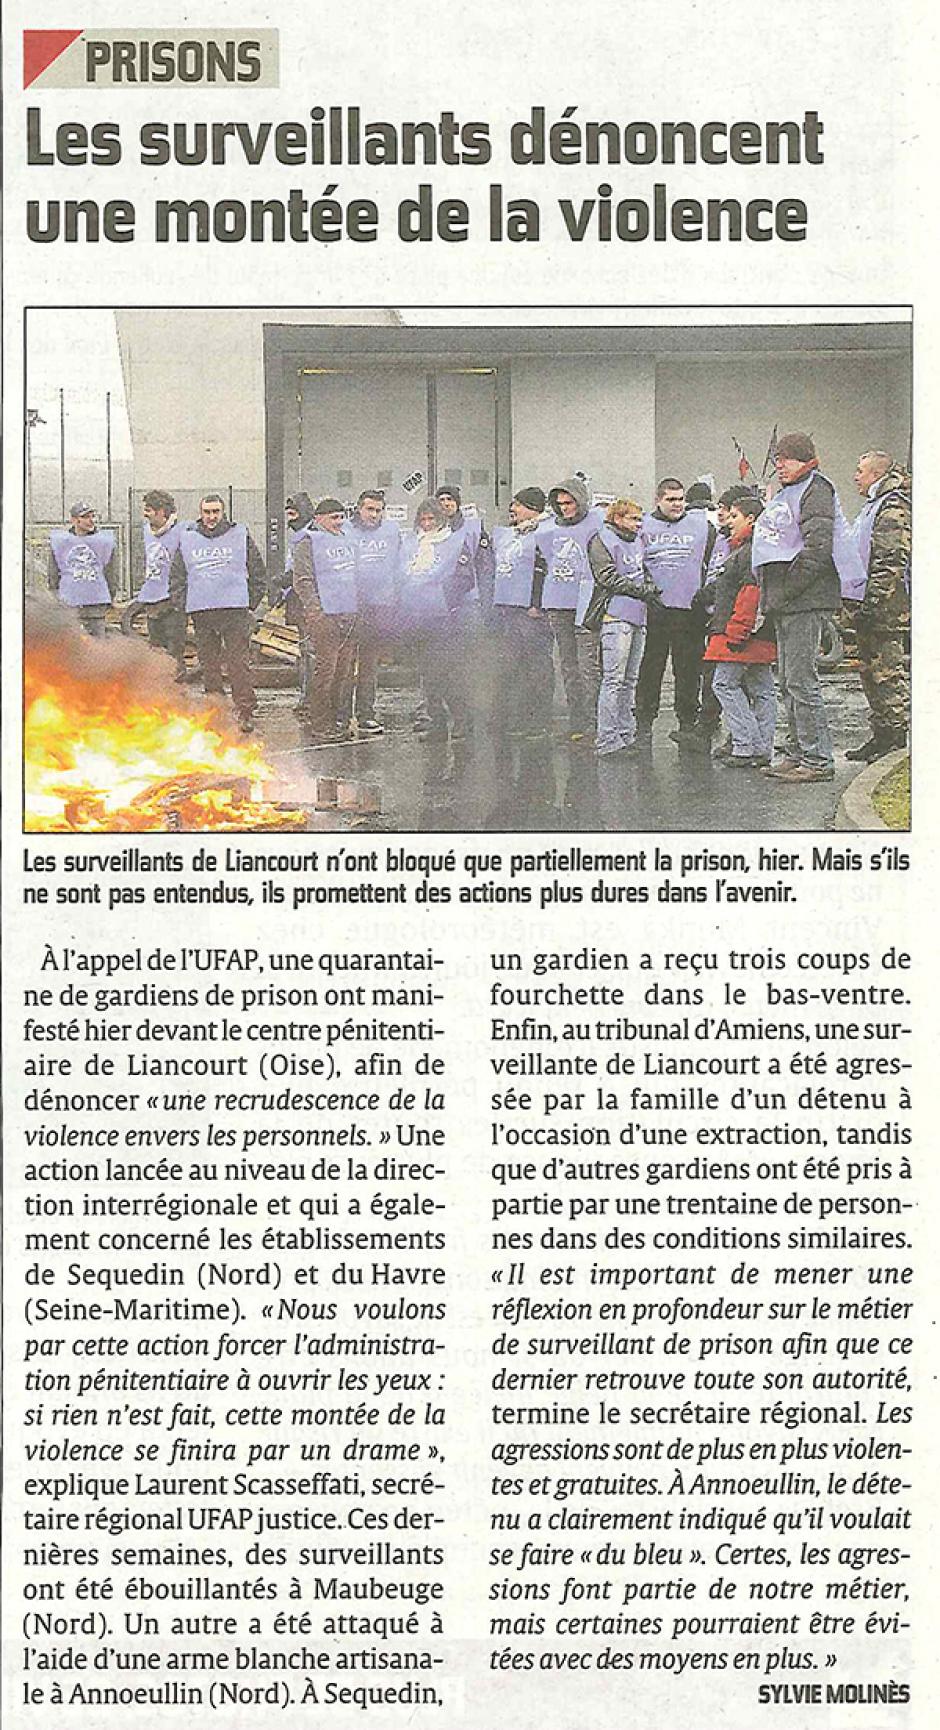 20130215-CP-Liancourt-Les surveillants de la prison dénoncent une montée de la violence